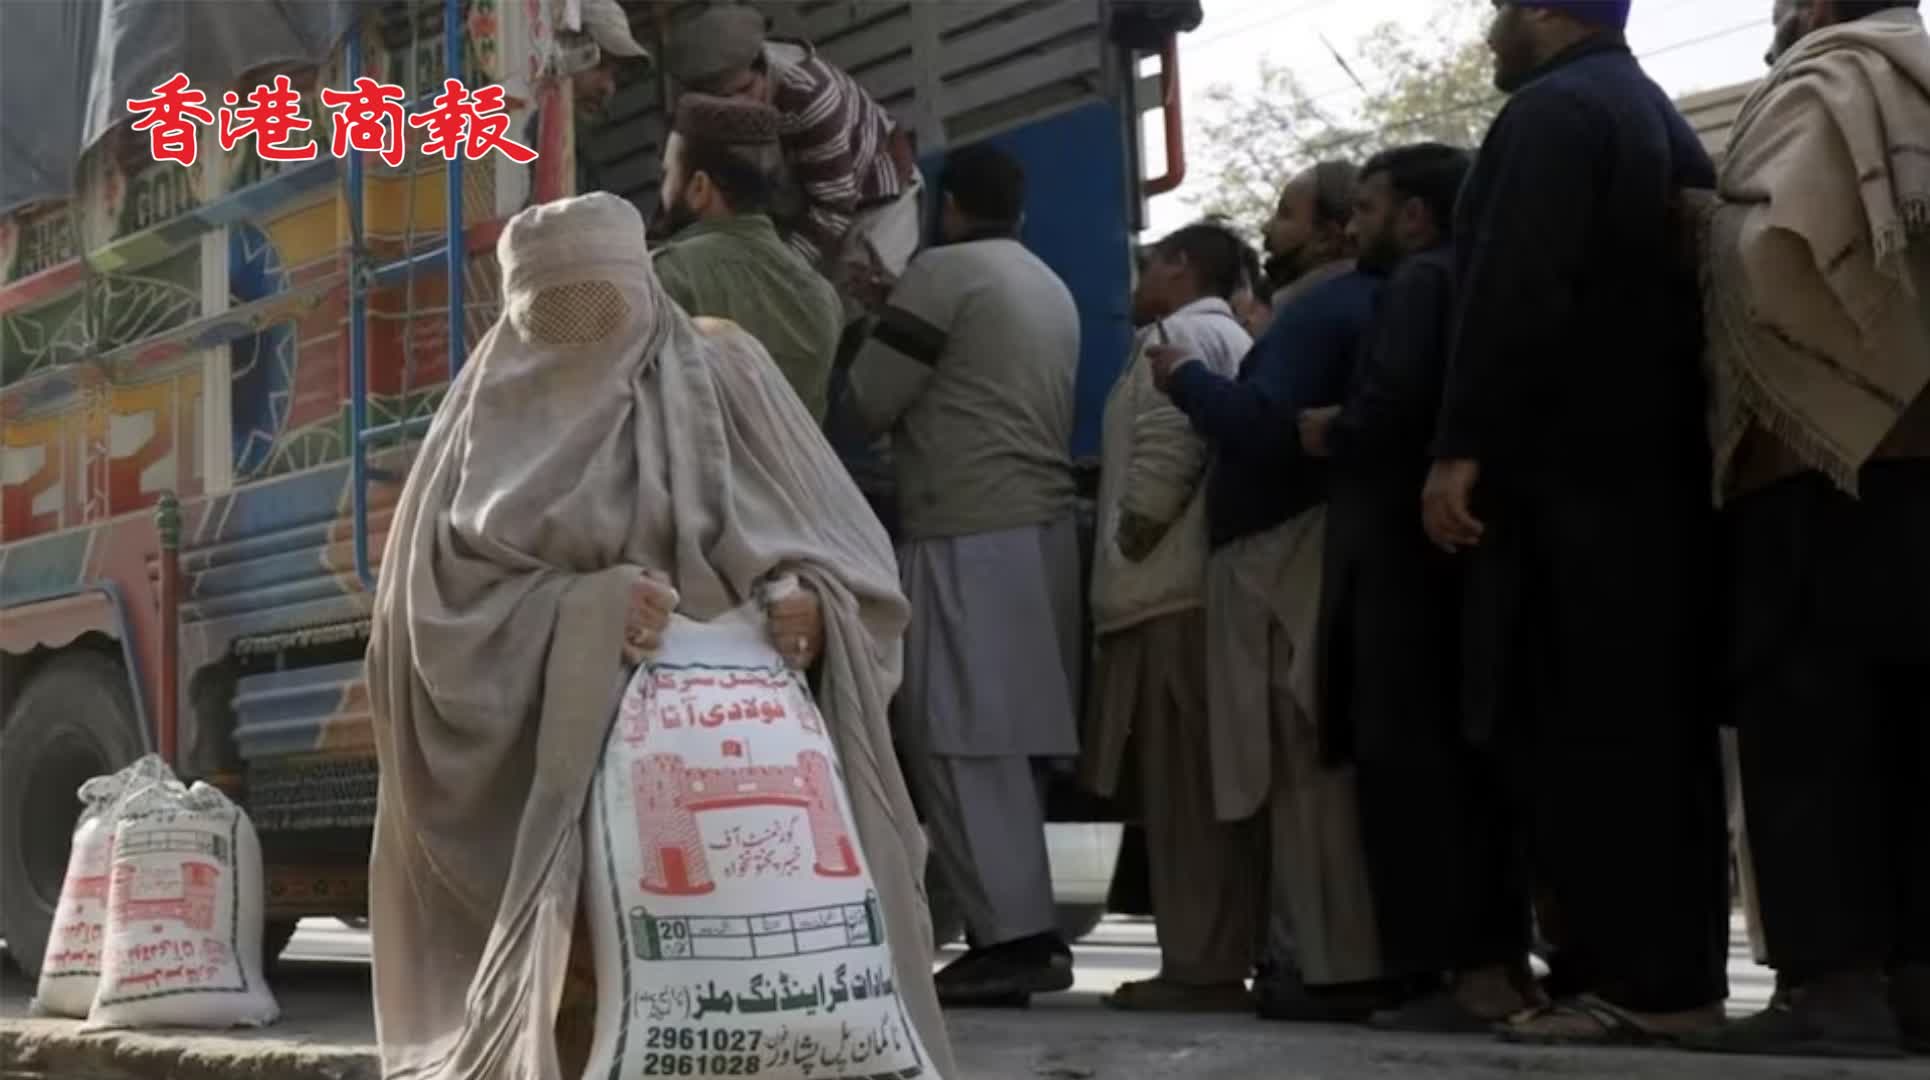 有片丨巴基斯坦面臨糧食危機 市民街上爭購麵粉